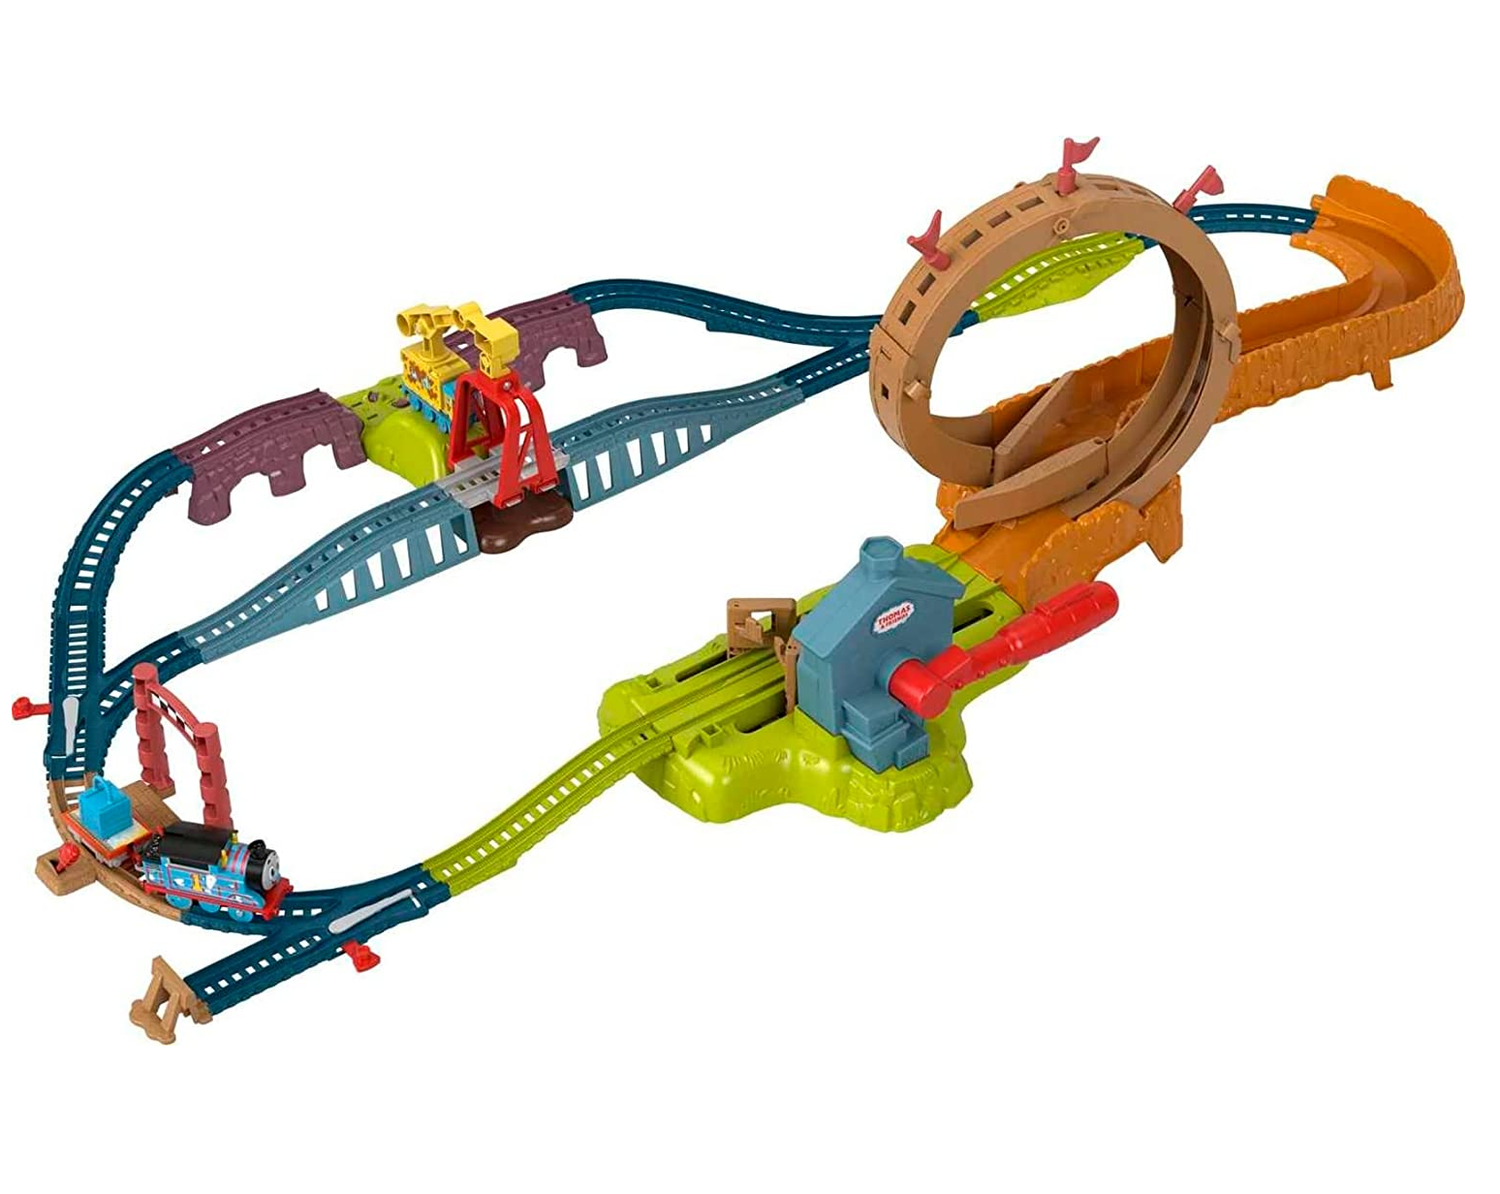 Trem Thomas e Amigos ( a Pilha Musical), Brinquedo para Bebês Fischer  Price Usado 89870187